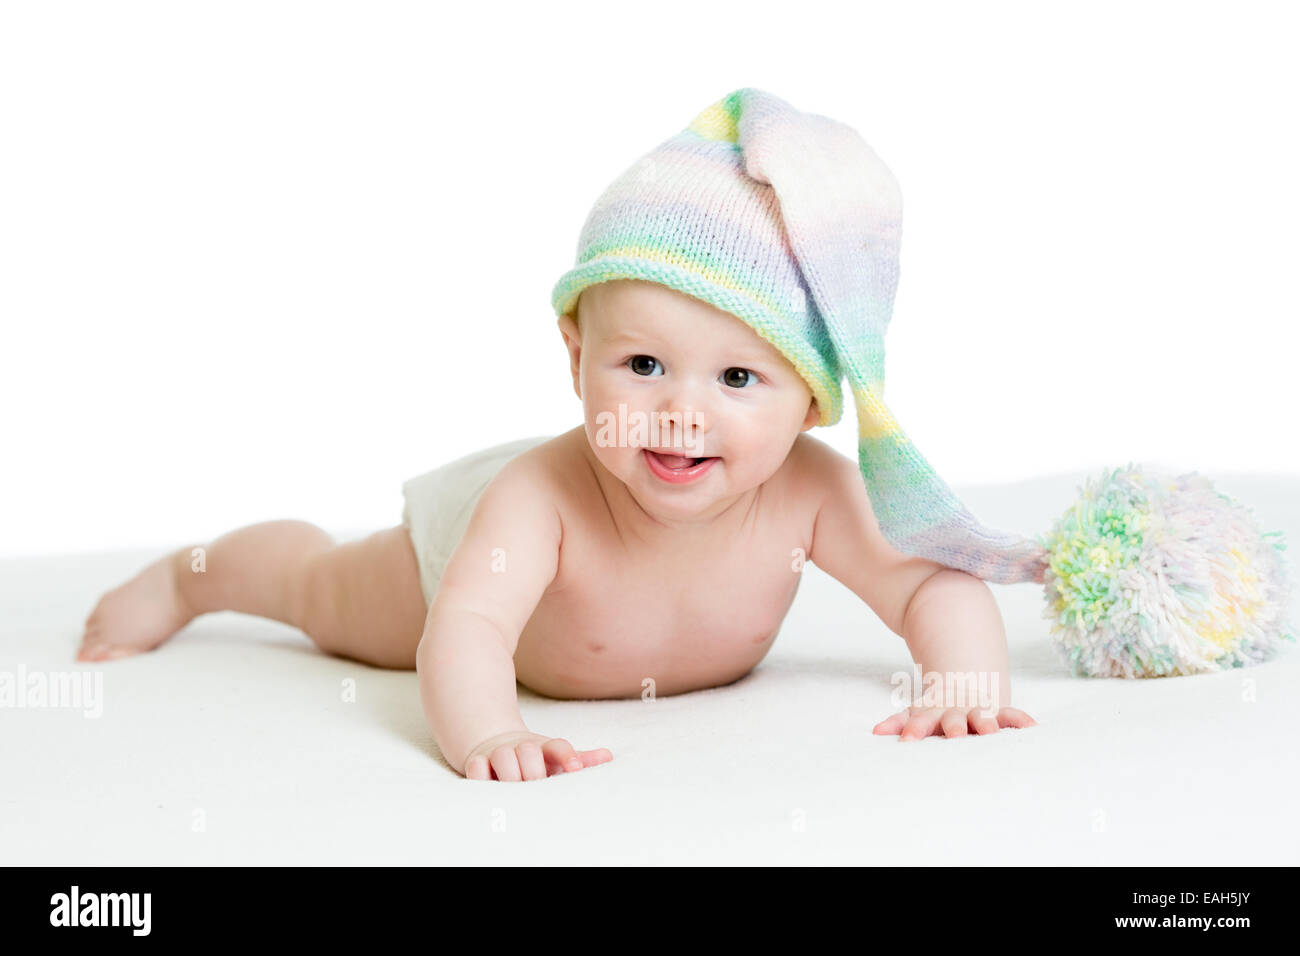 Sorridente bimbo neonato in funny hat Foto Stock